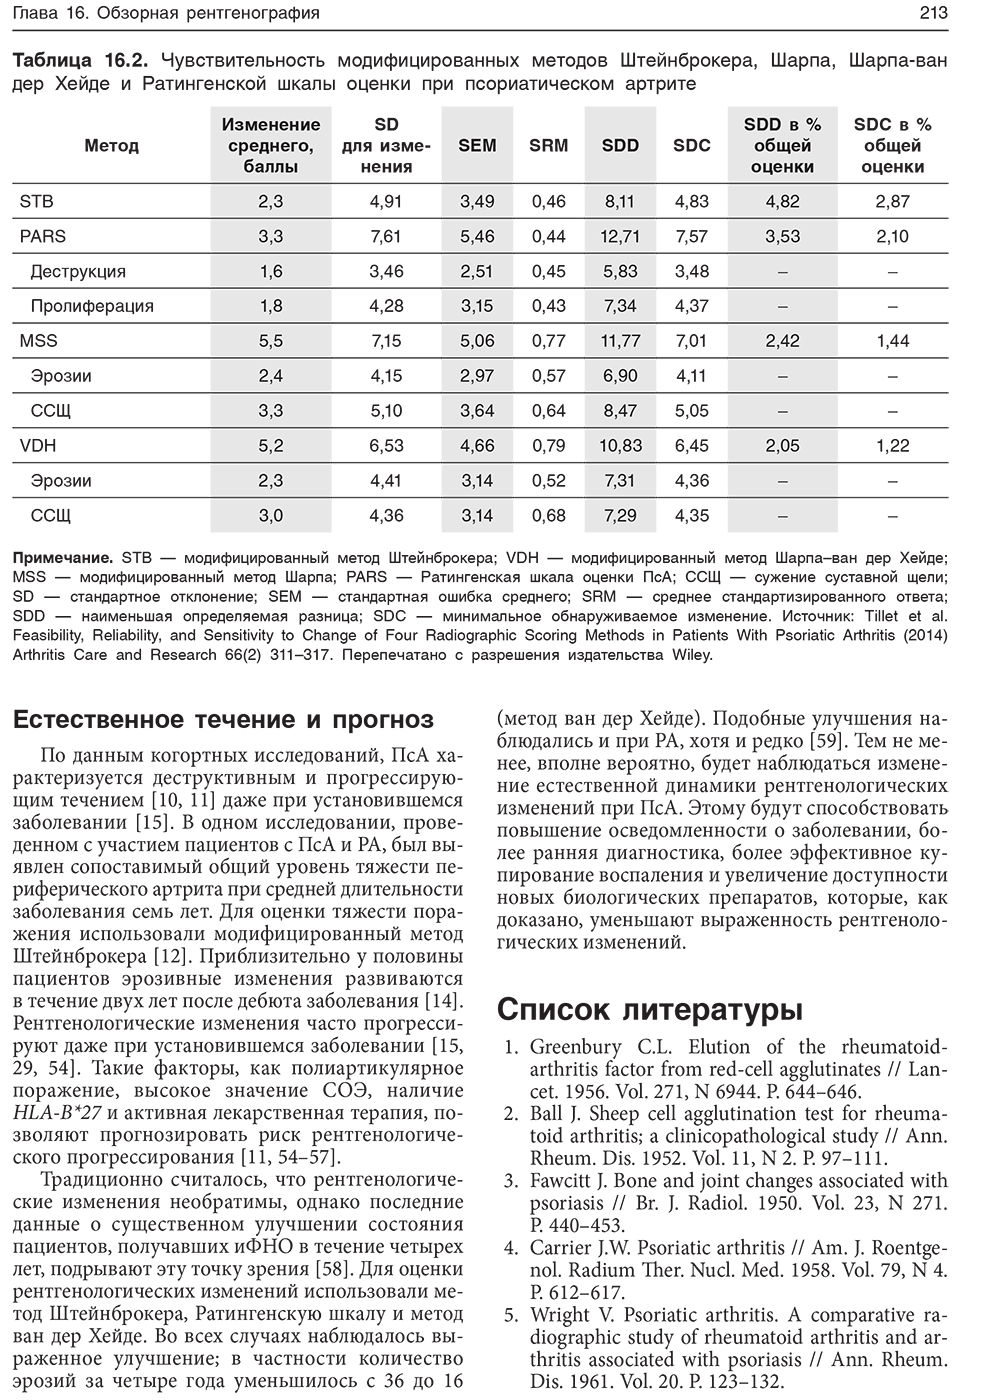 Таблица 16.2. Чувствительность модифицированных методов Штейнброкера